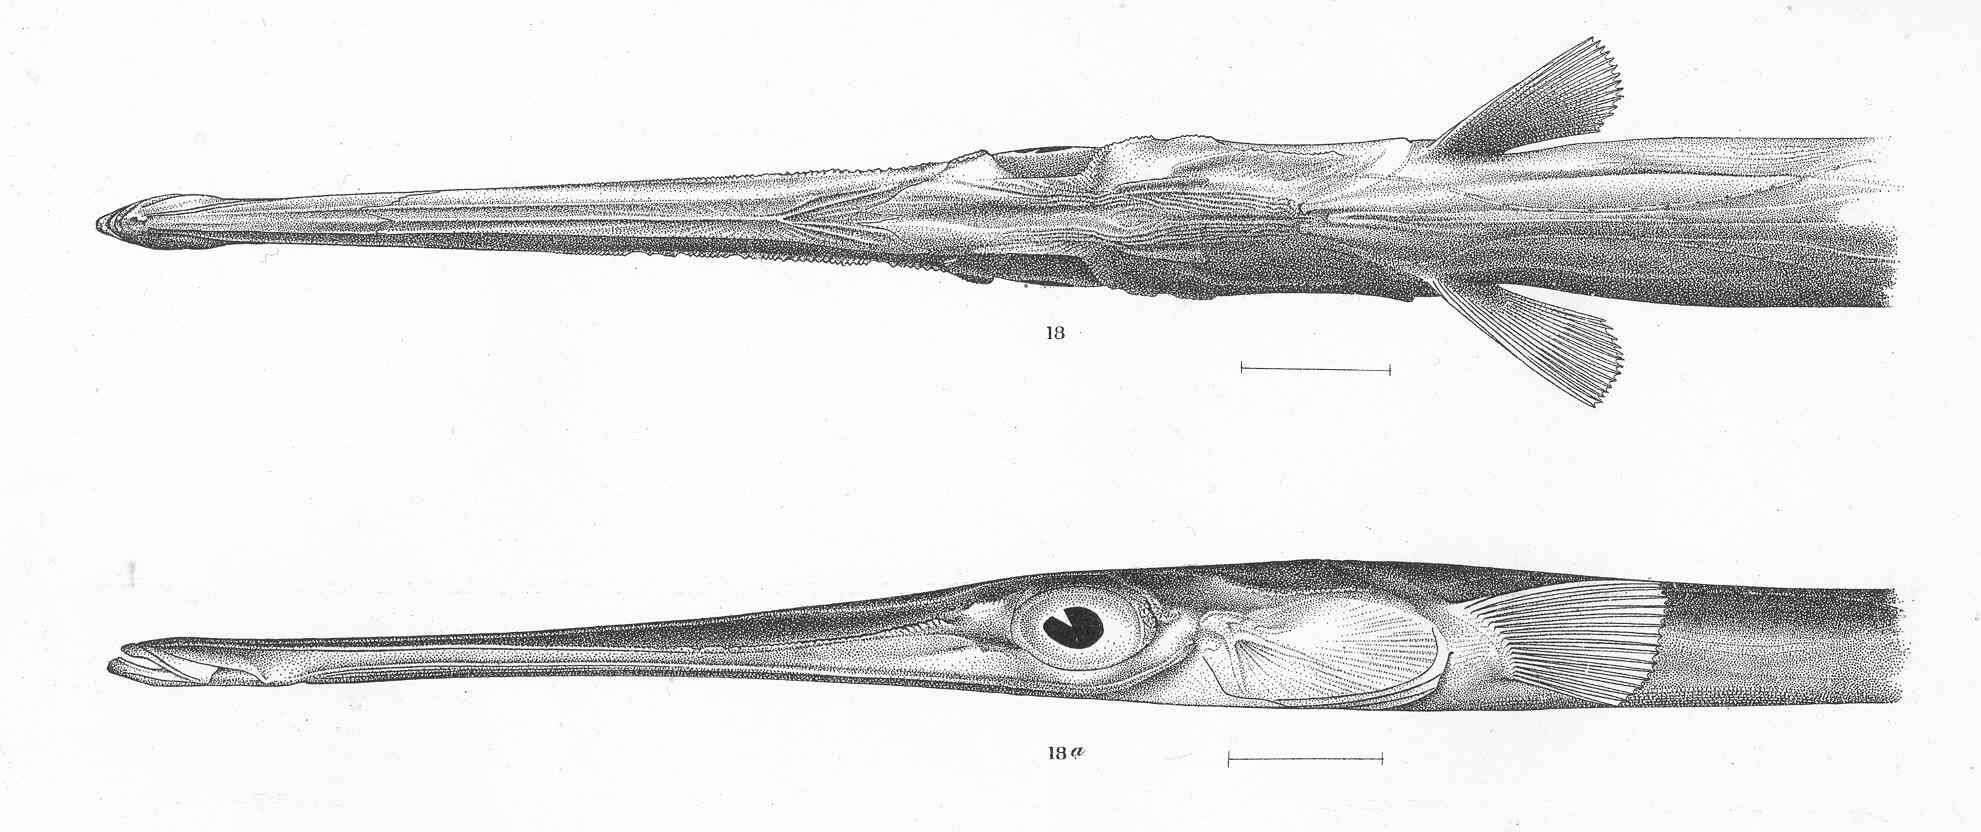 Image of cornetfishes